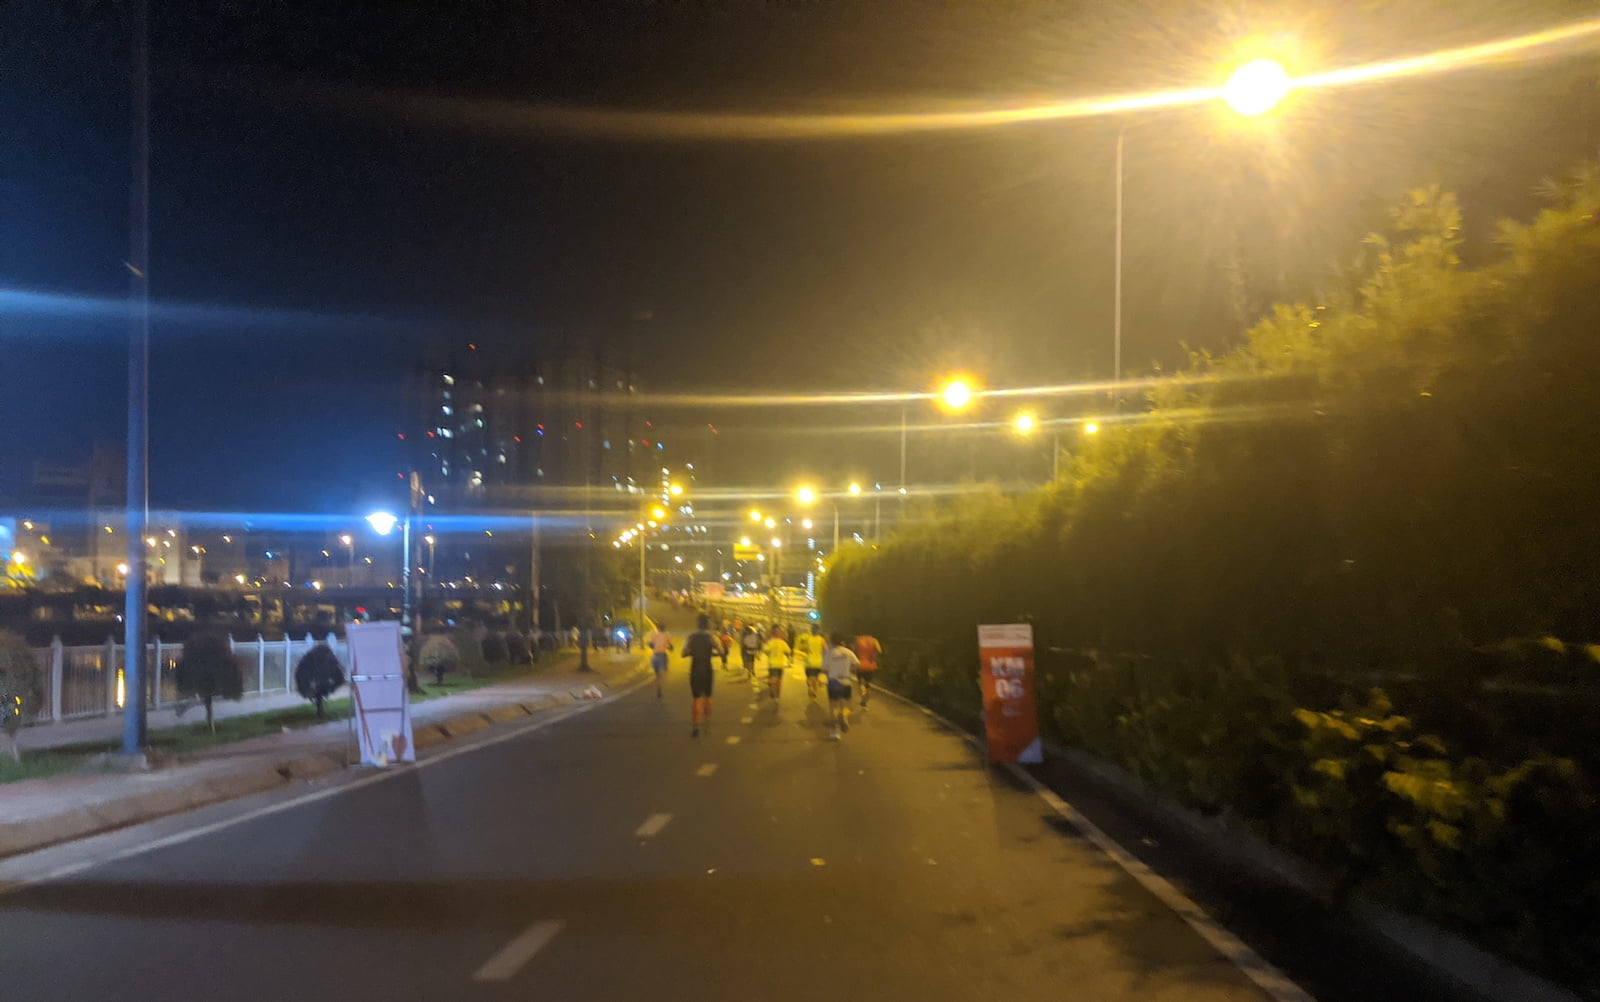 Kí sự HCMC International Marathon 2019 - Lần 2 chinh phục Full Marathon trên đường nhựa - ki su hcmc marathon 2019